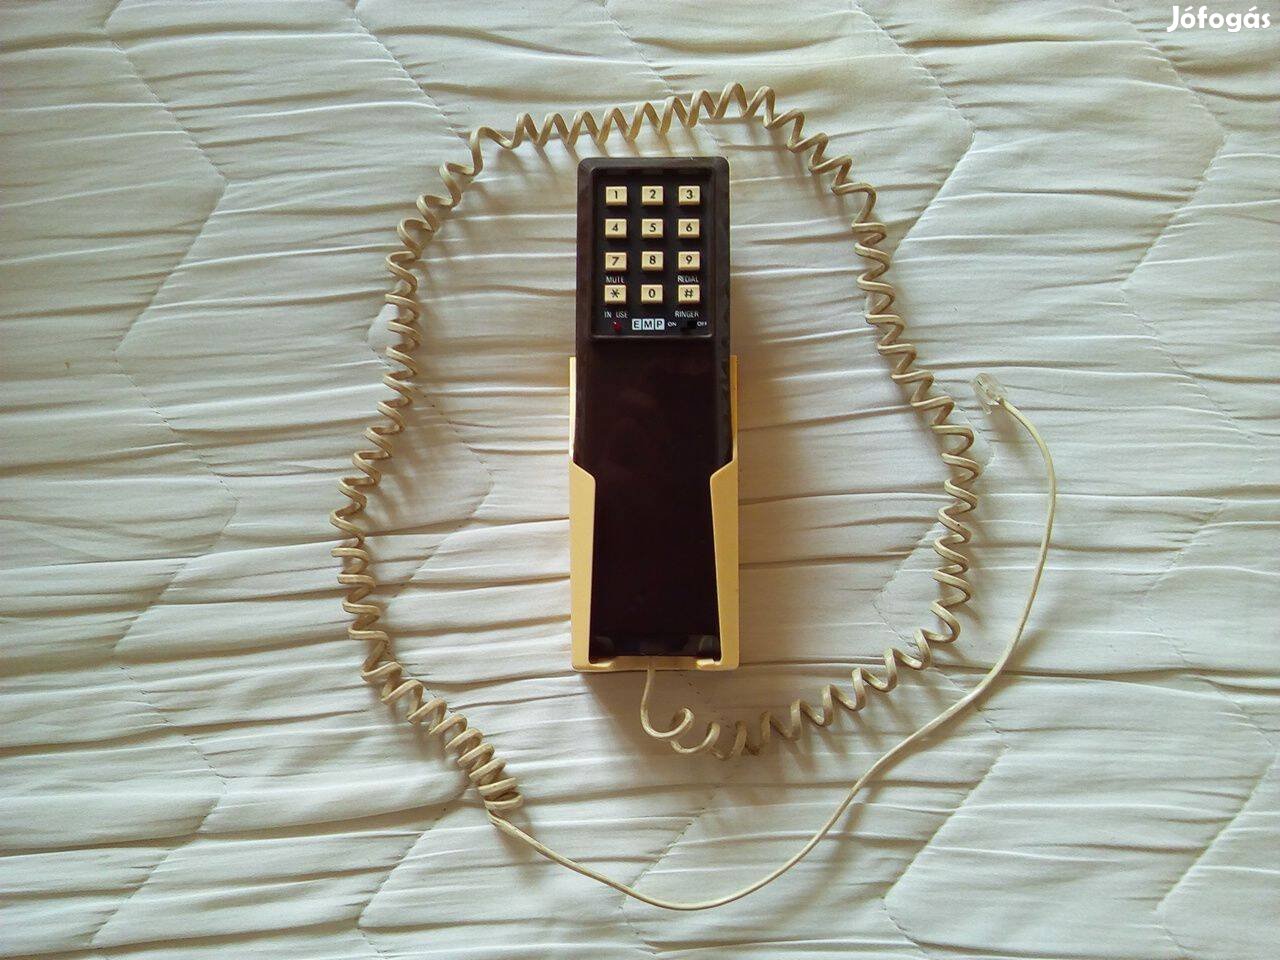 Vezetékes telefon